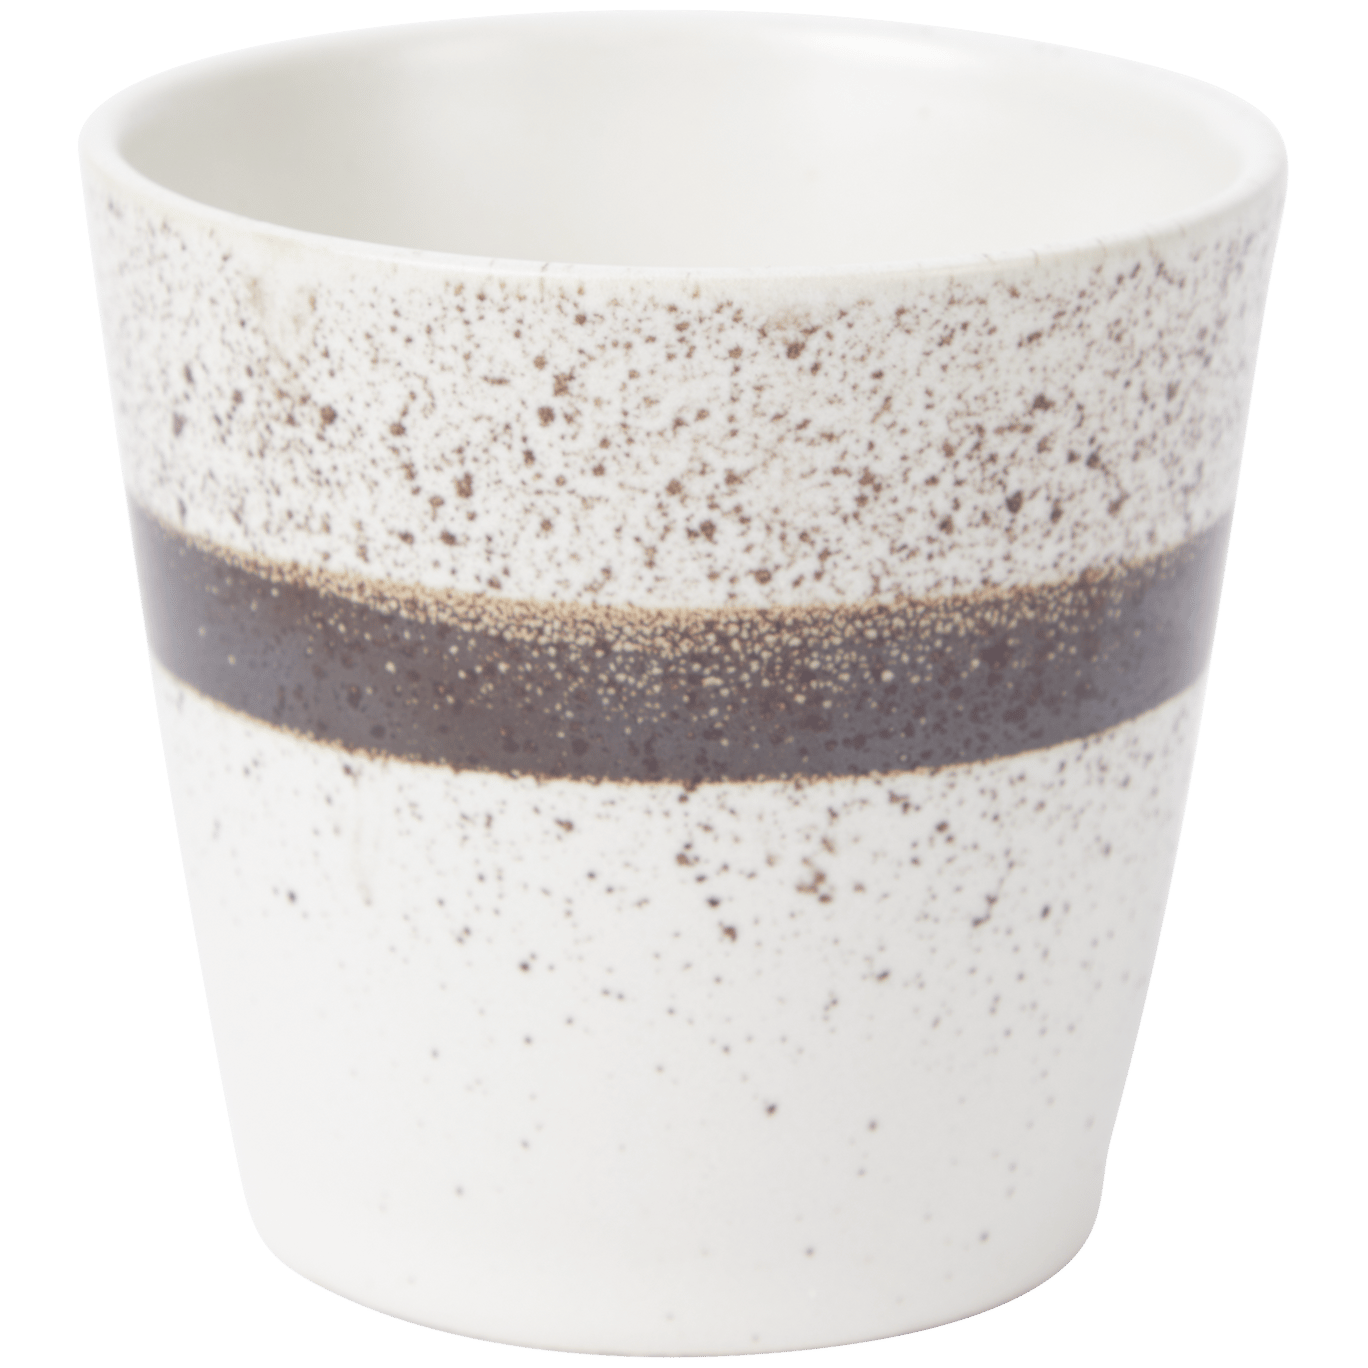 Bicchierino da caffè in ceramica